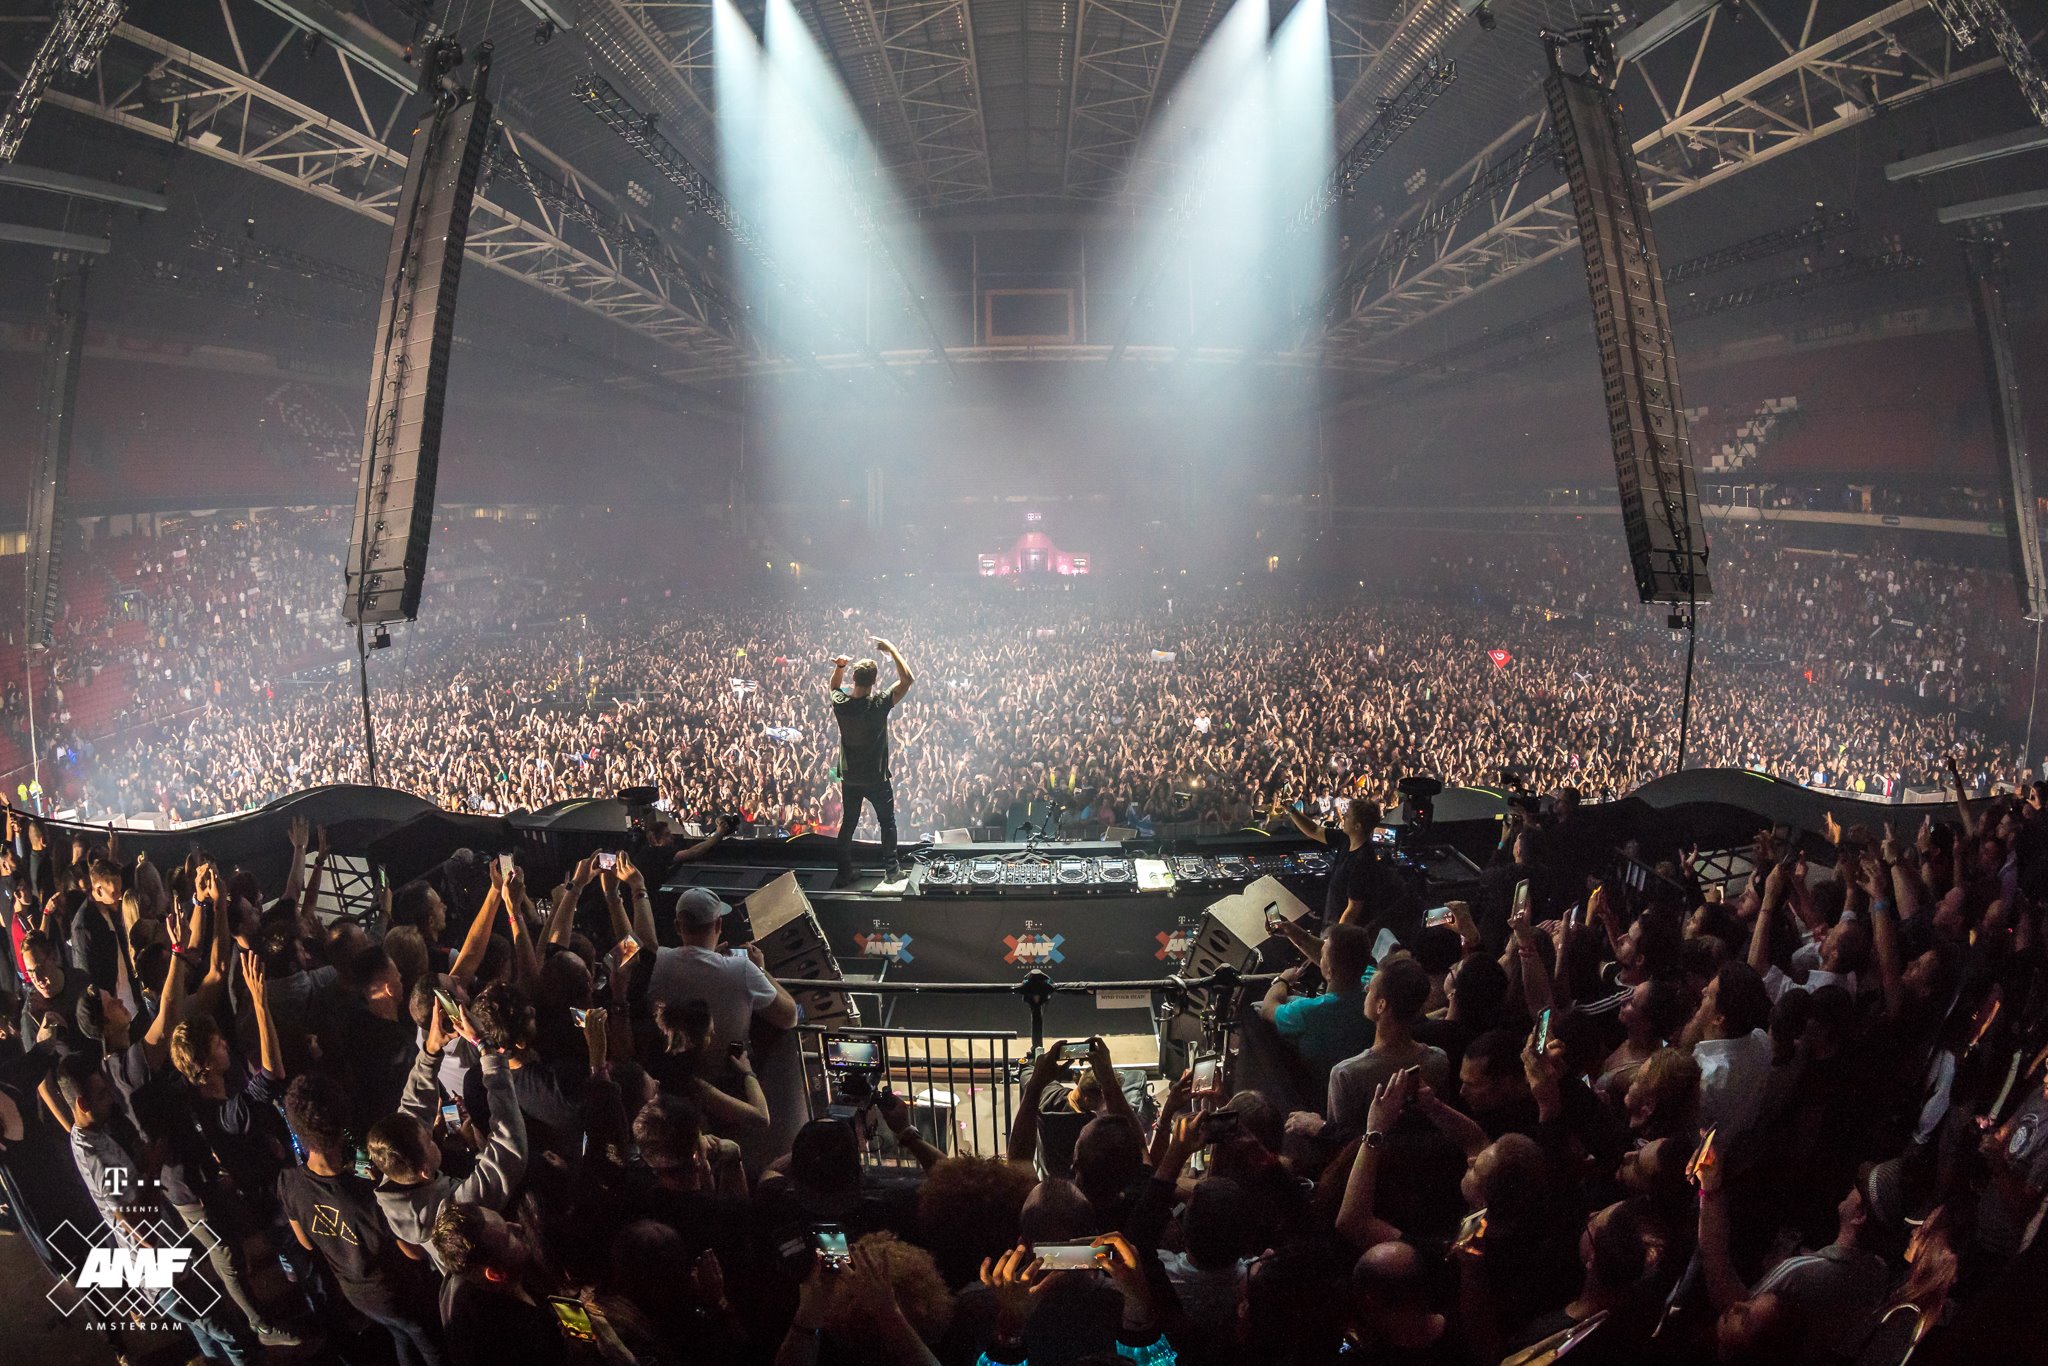 Martin Garrix Giữ Ngôi DJ Số 1 Thế Giới 3 Năm Liền và Đây Là Full List Top 100 DJ Mag 2018